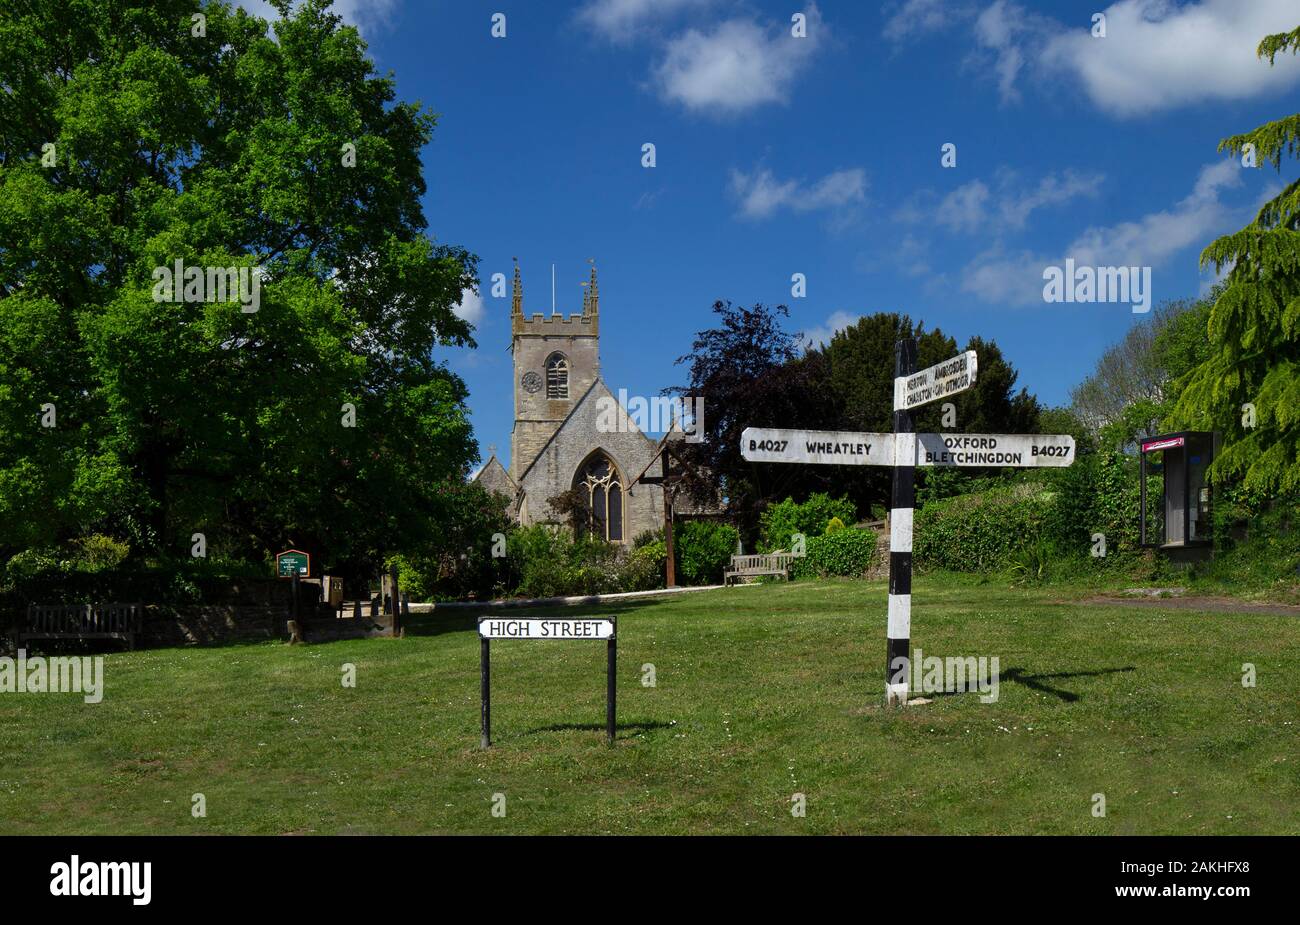 Villaggio scena con verde vecchio cartello stradale e chiesa, Islip oxfordshire Foto Stock